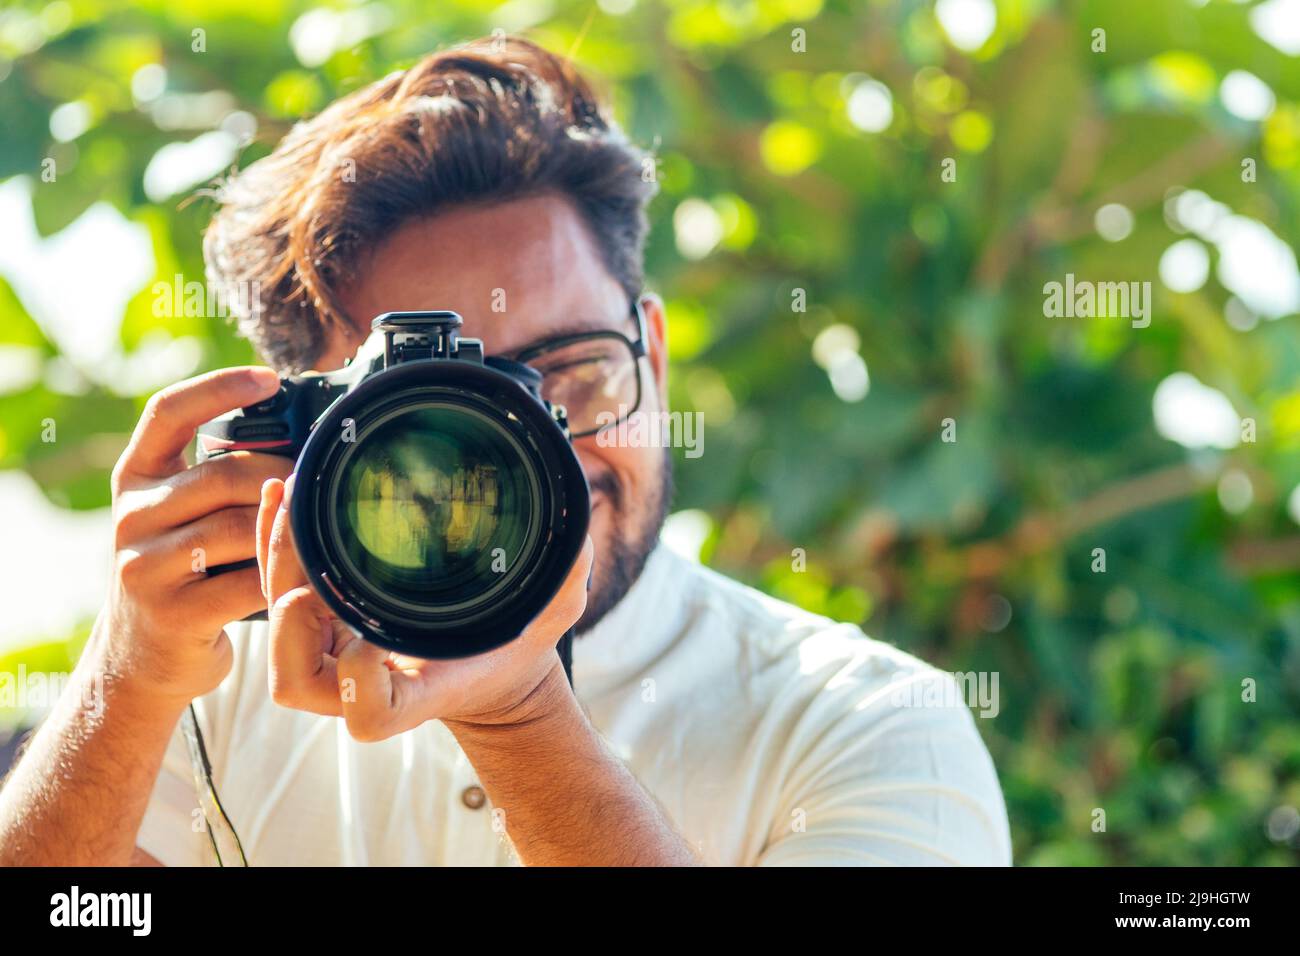 Ein hübscher und selbstbewusster indischer Fotograf mit einer großen professionellen Kamera, die am Strand fotografiert.Fotosession im Sommer Stockfoto